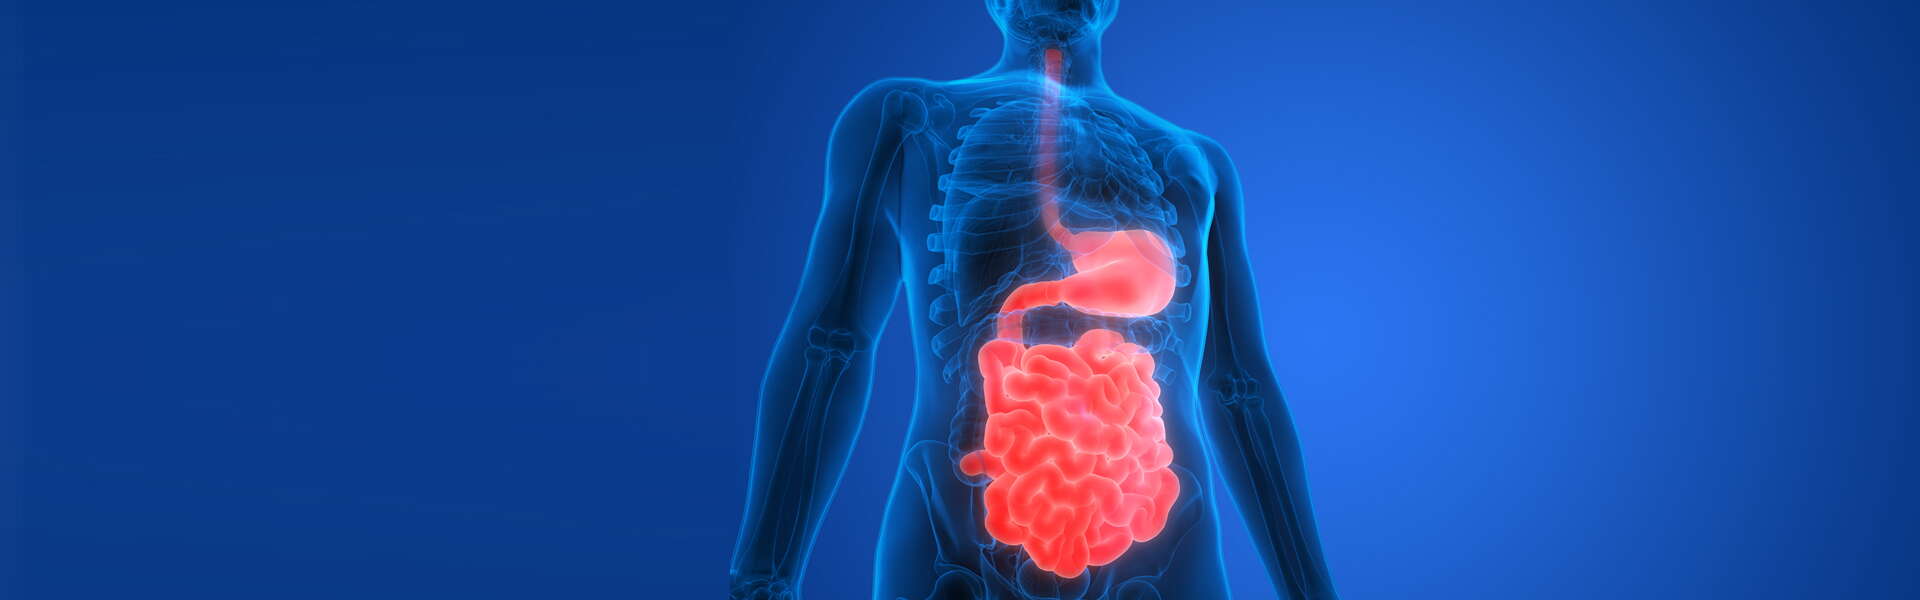 L'intestino e le sue connessioni con il sistema nervoso centrale (SNC)